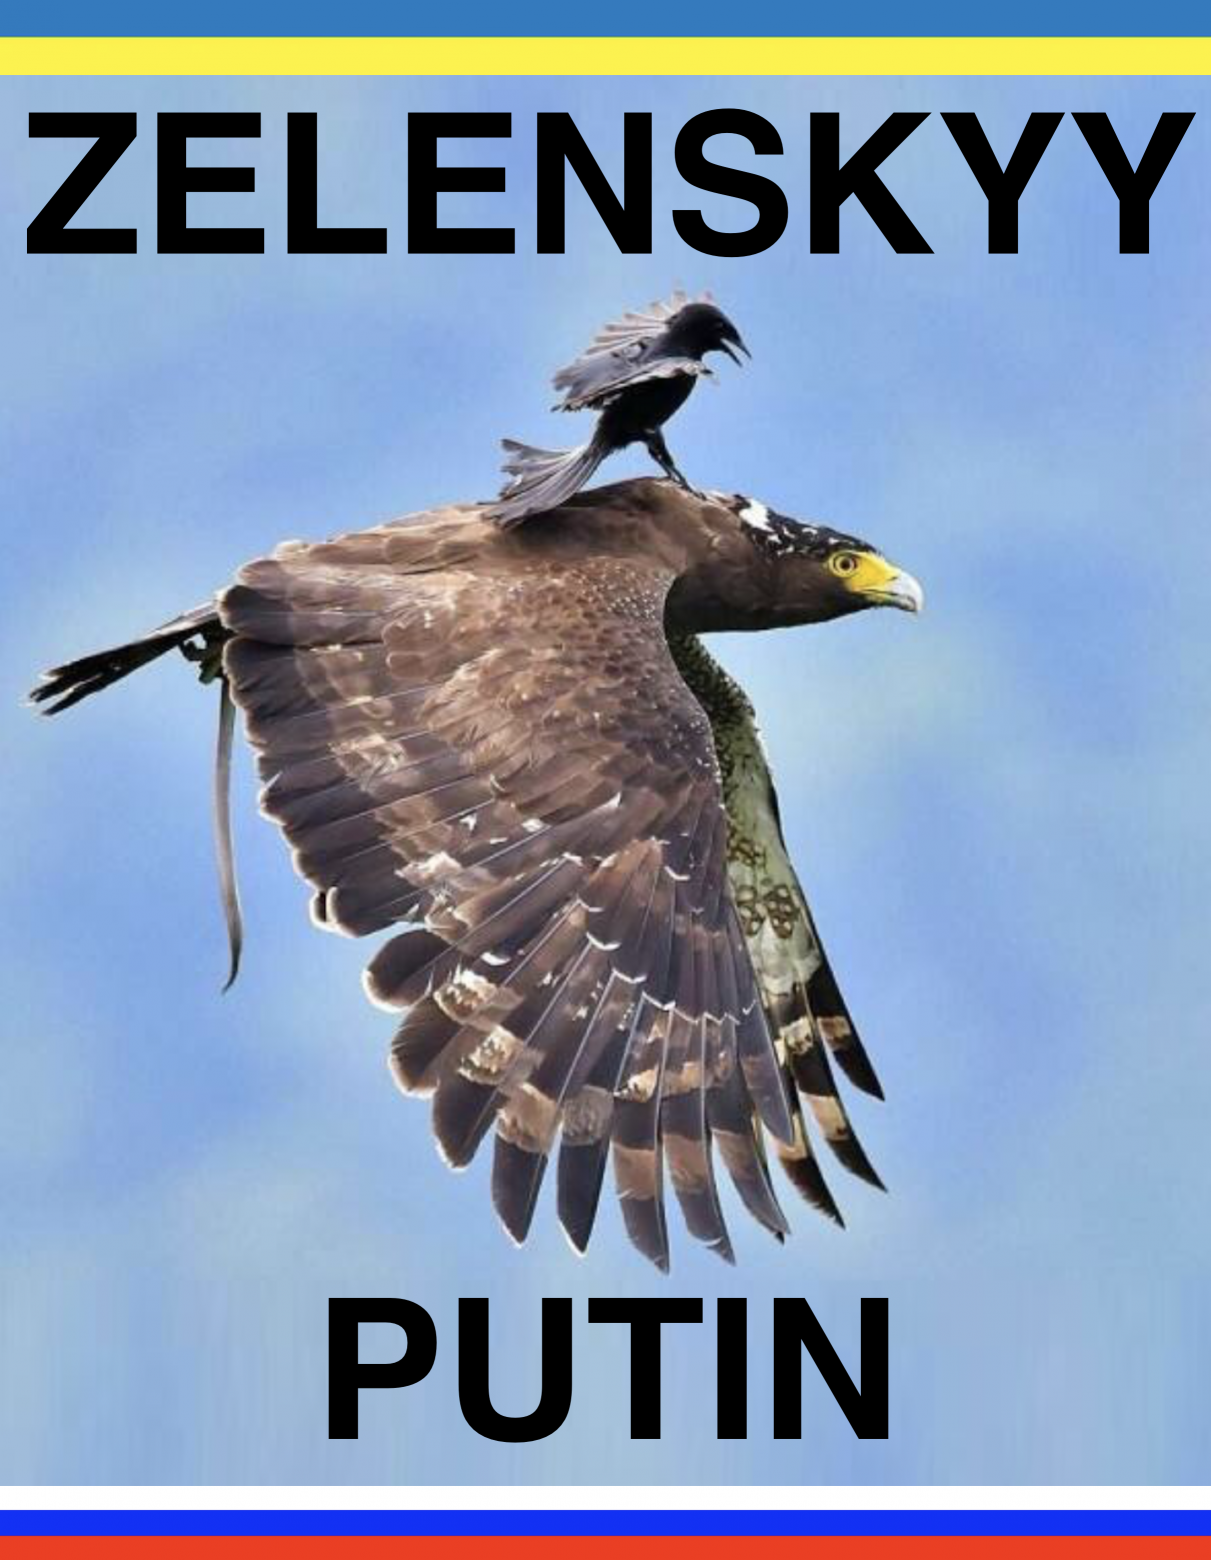 Zelenskyy Vs Putin Meme Blank Meme Template